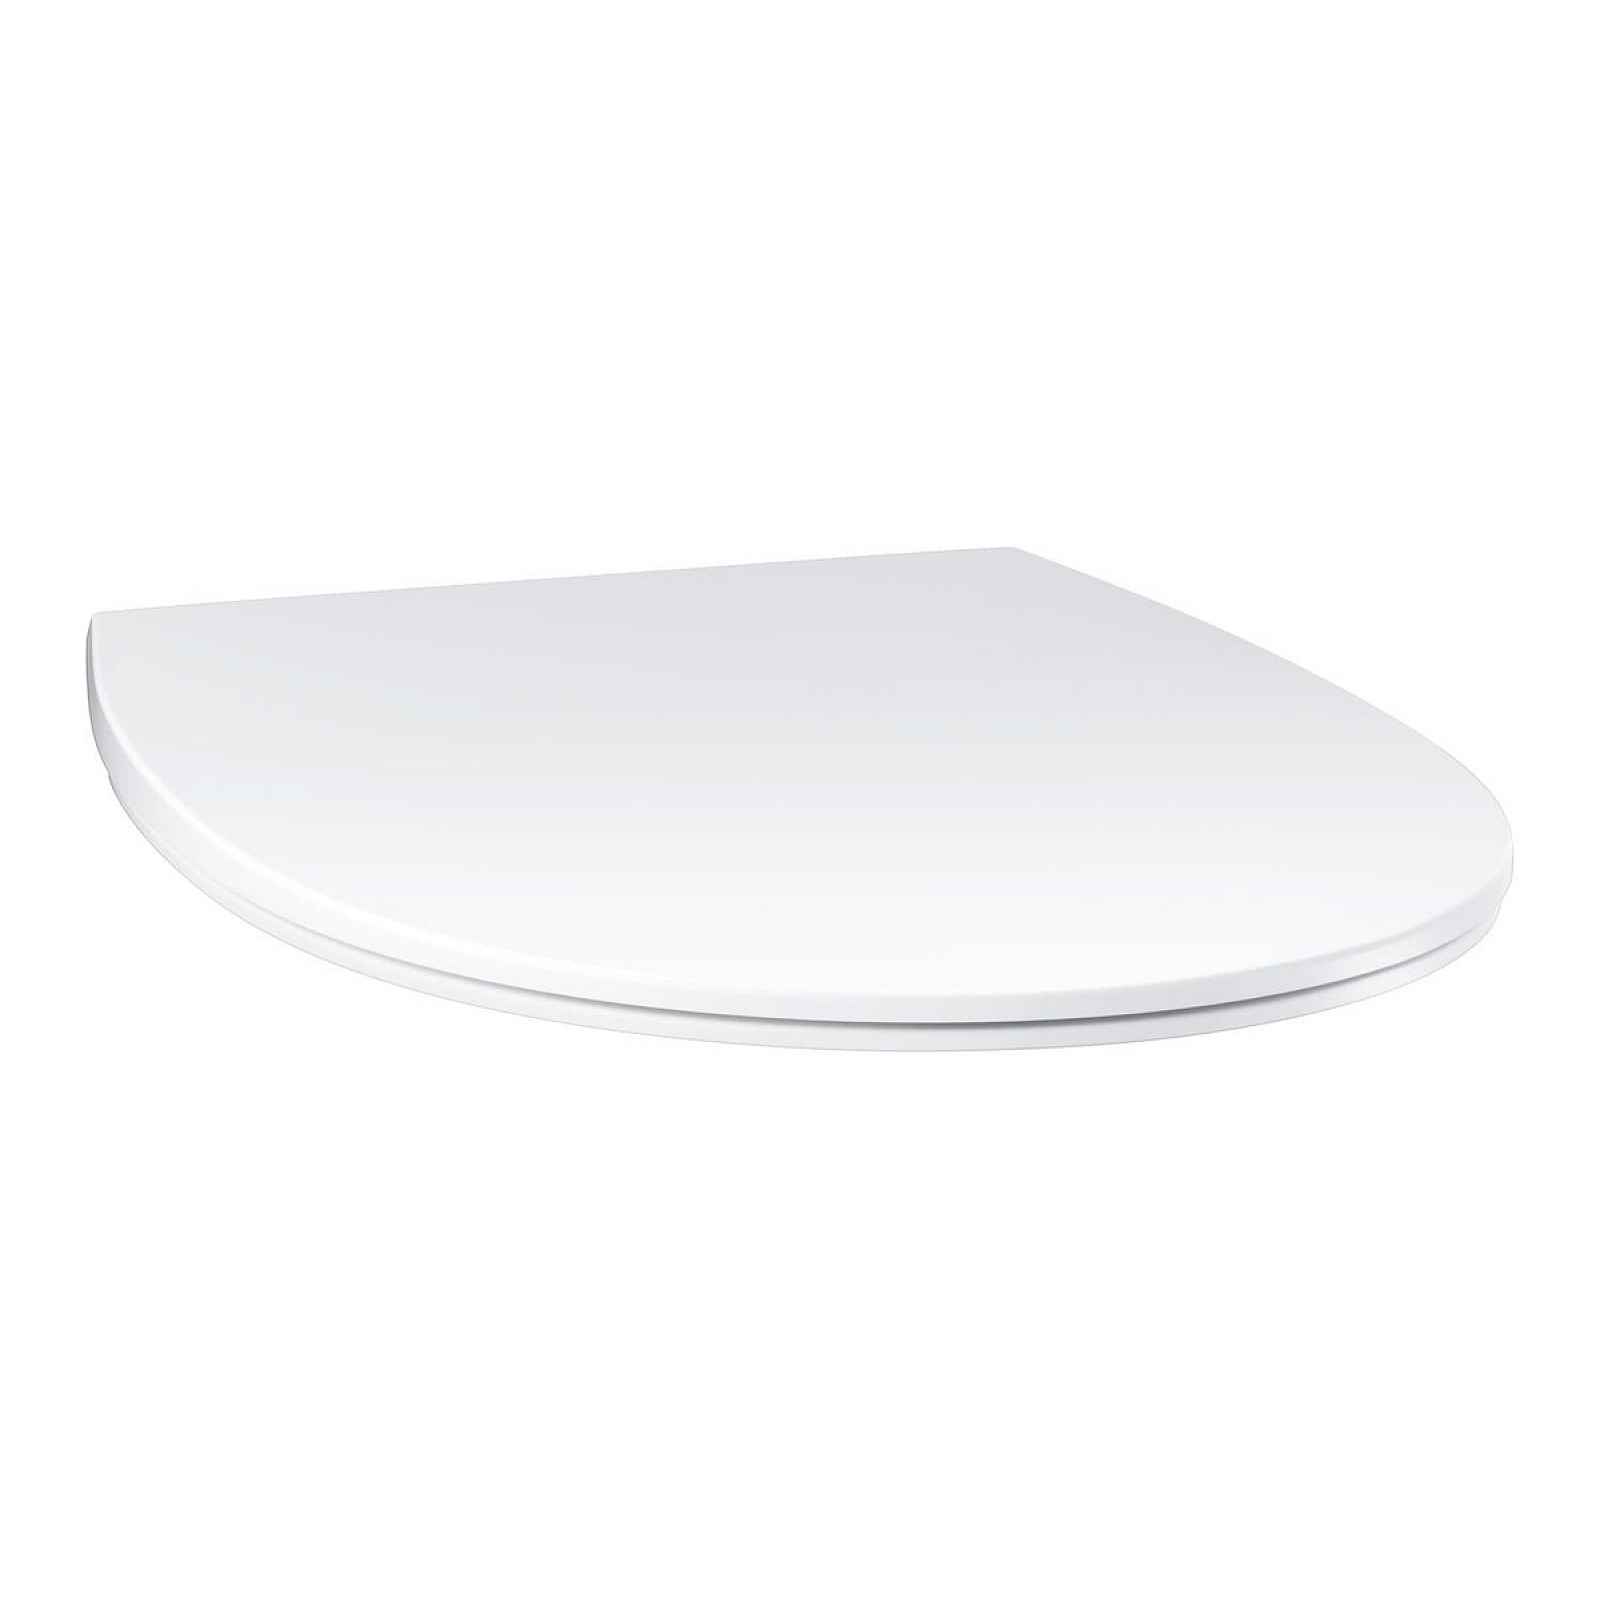 Wc sedátko Grohe Bau Ceramic duroplast alpine-white 39923000